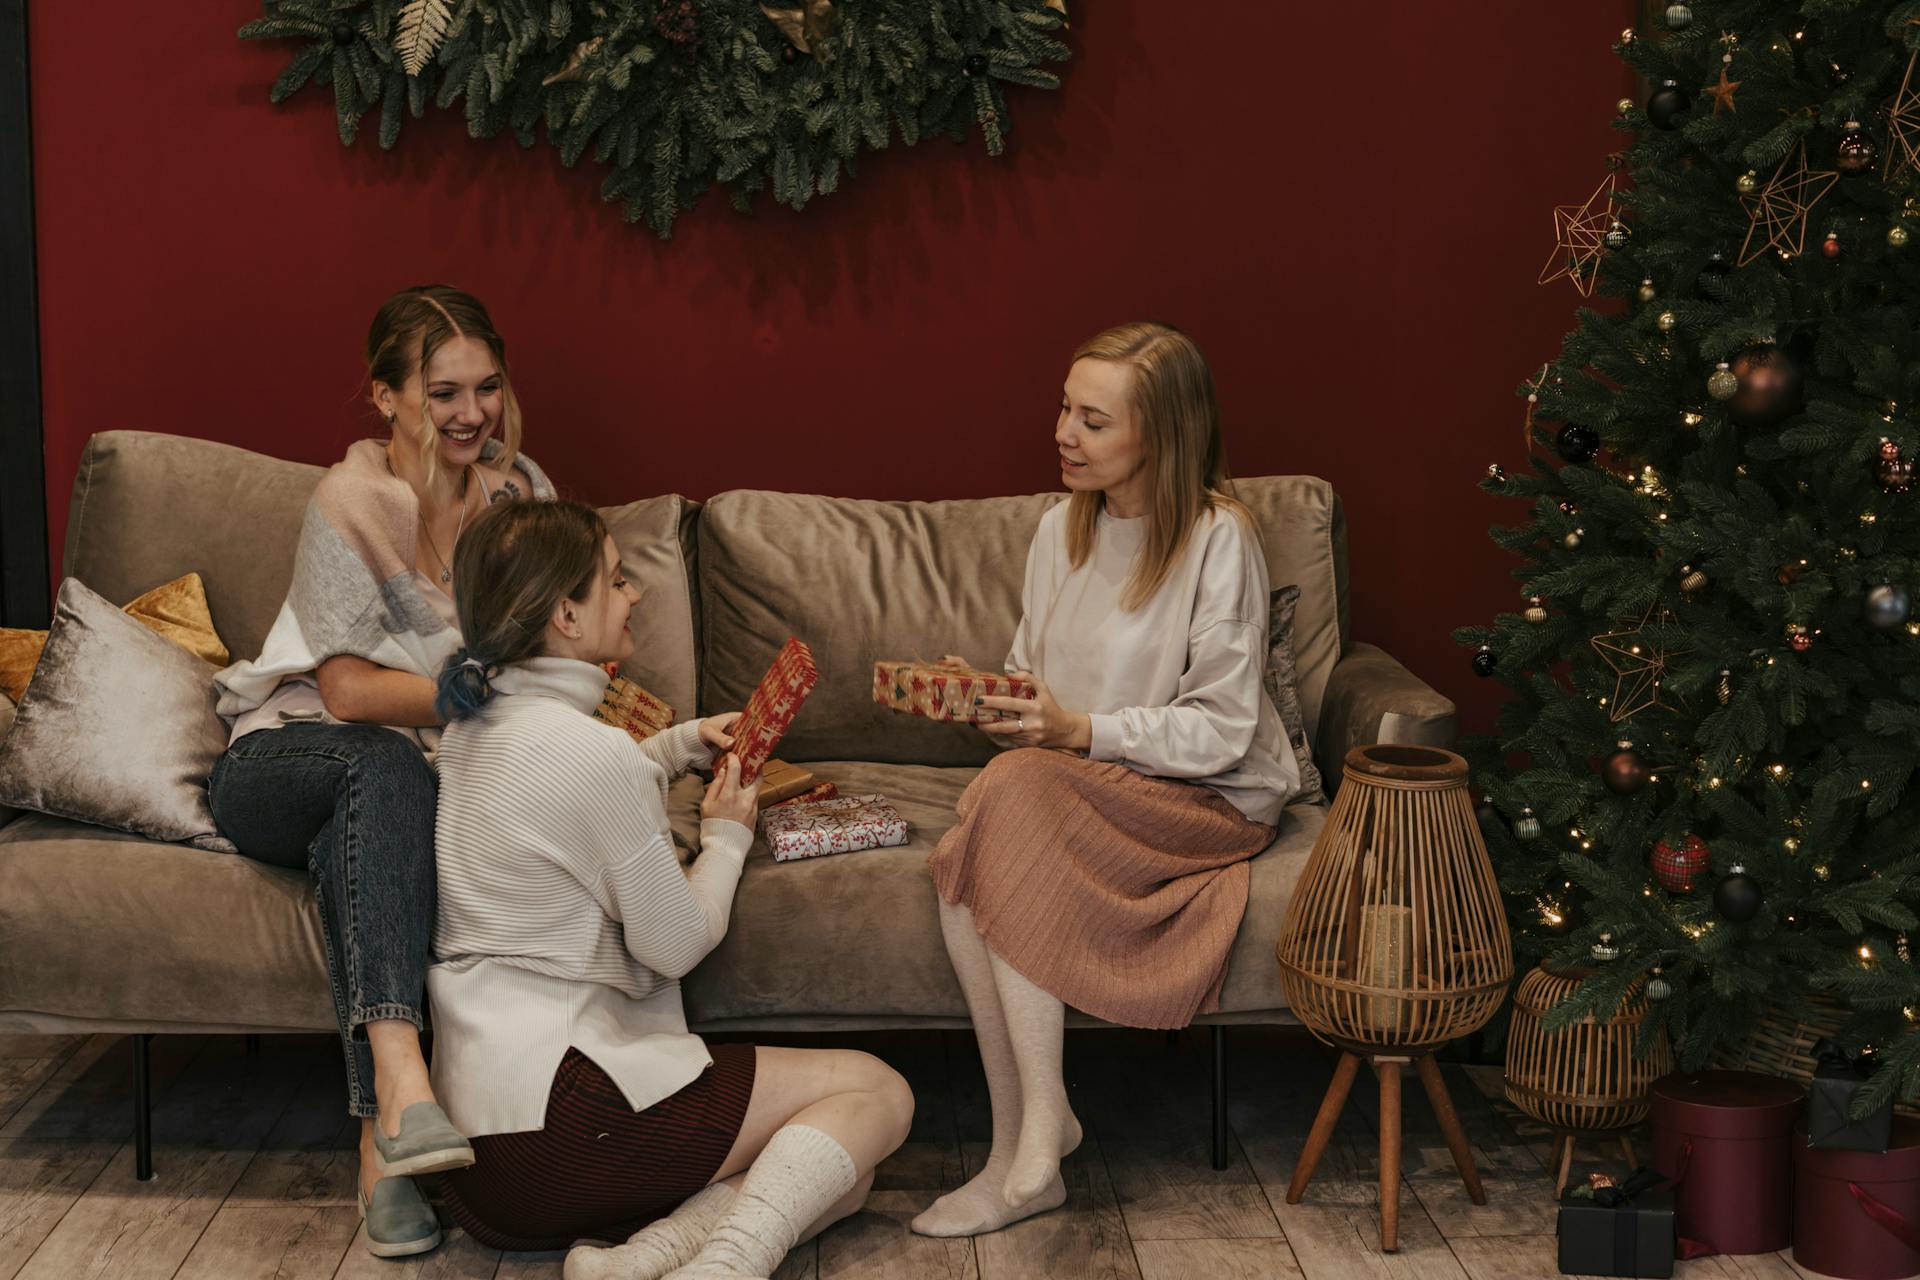 Des femmes échangent des cadeaux de Noël | Source : Pexels